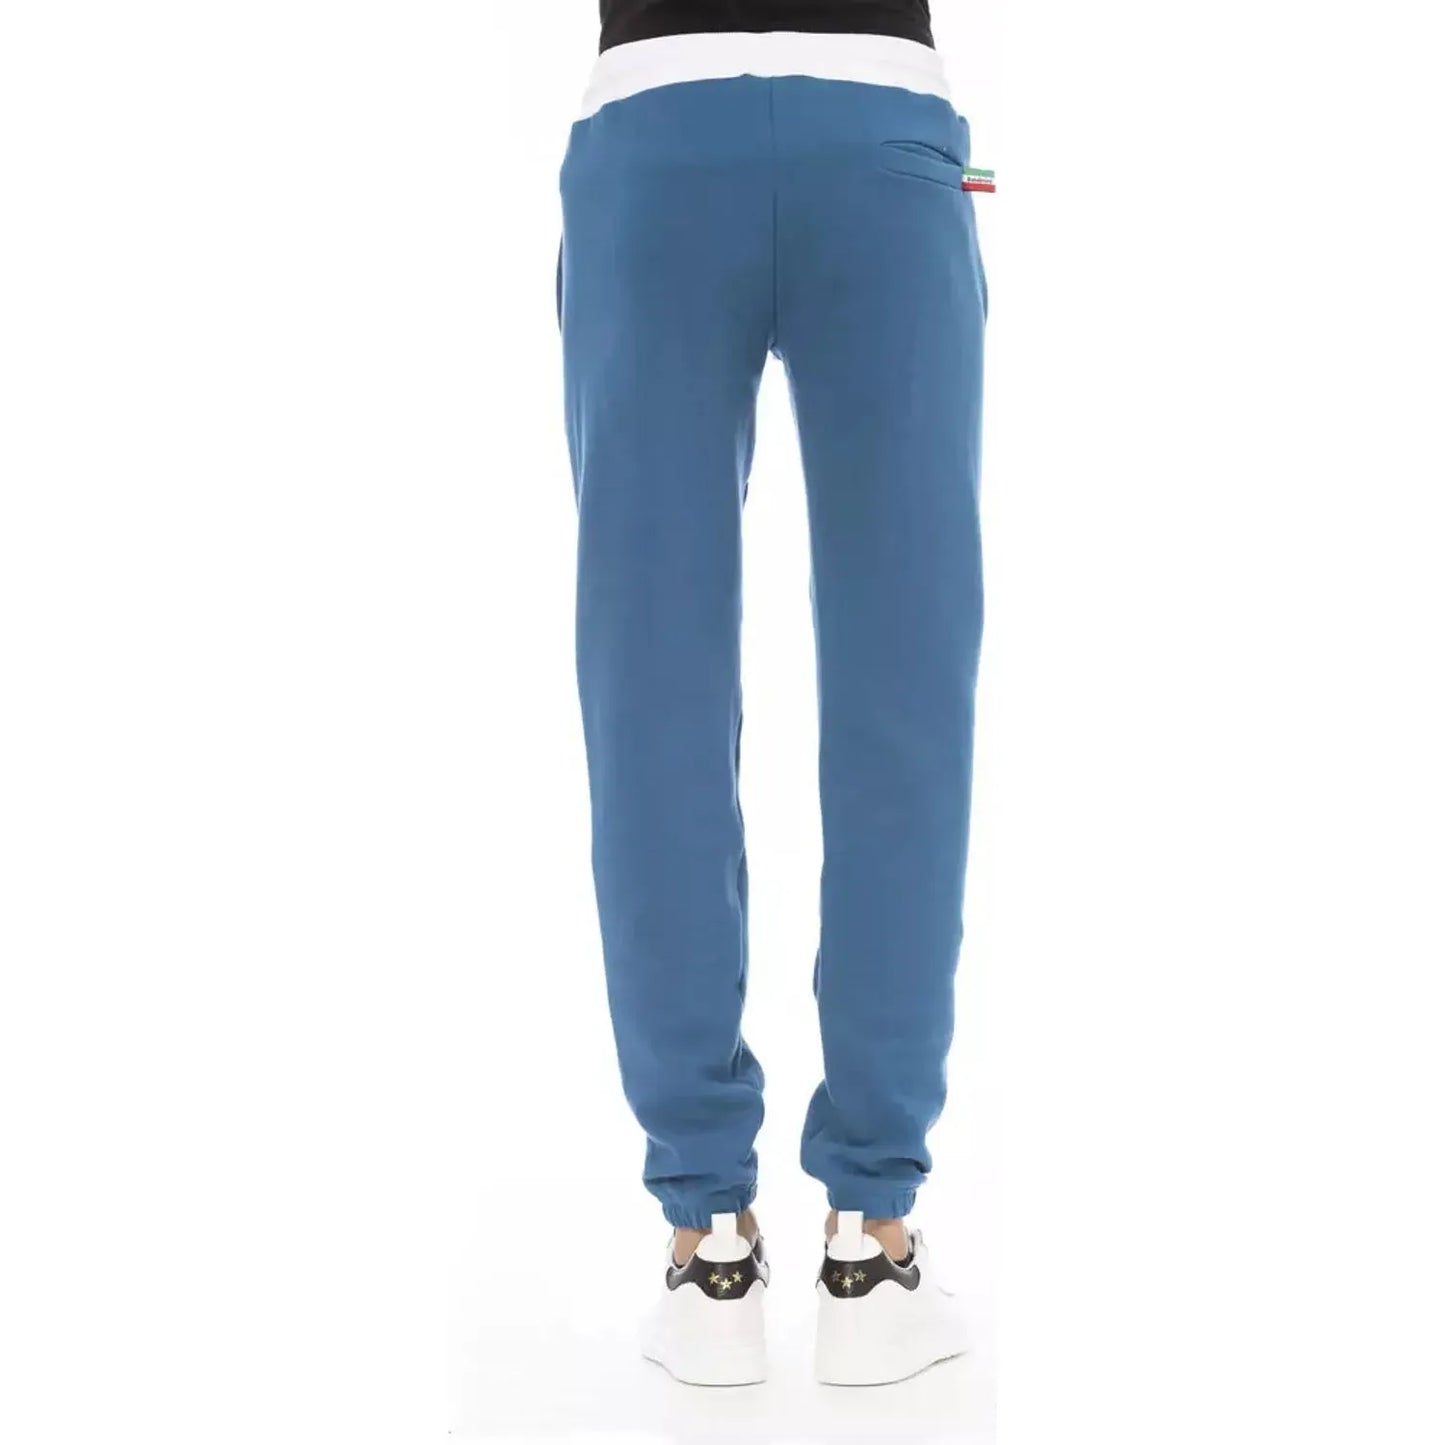 Baldinini Trend Elegant Cotton Fleece Sport Pants blue-cotton-jeans-pant-160